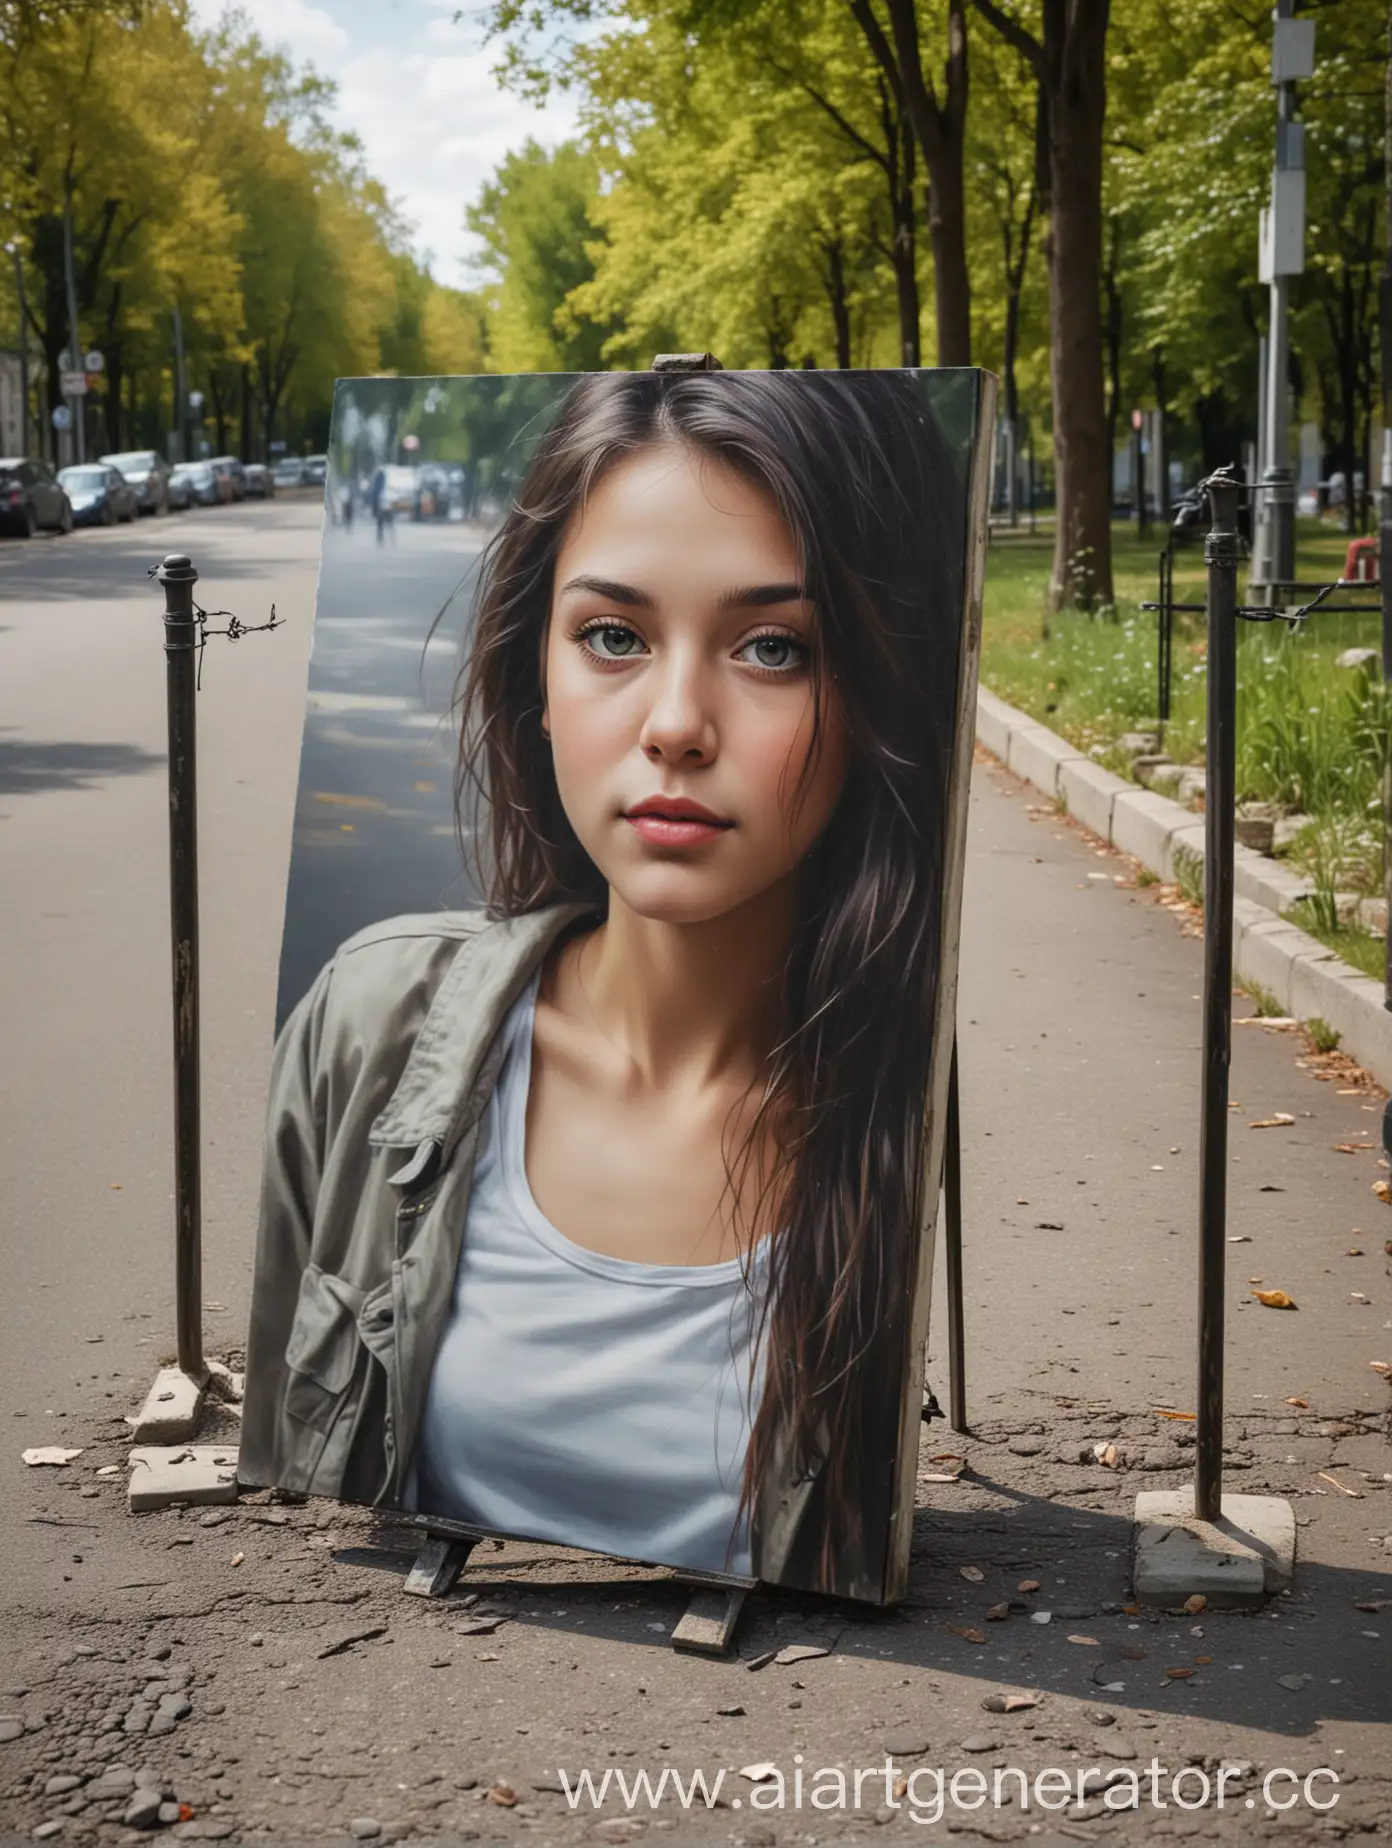 Портрет на холсте размером 50х70 сантиметров стоит в парке на асфальте у бордюра